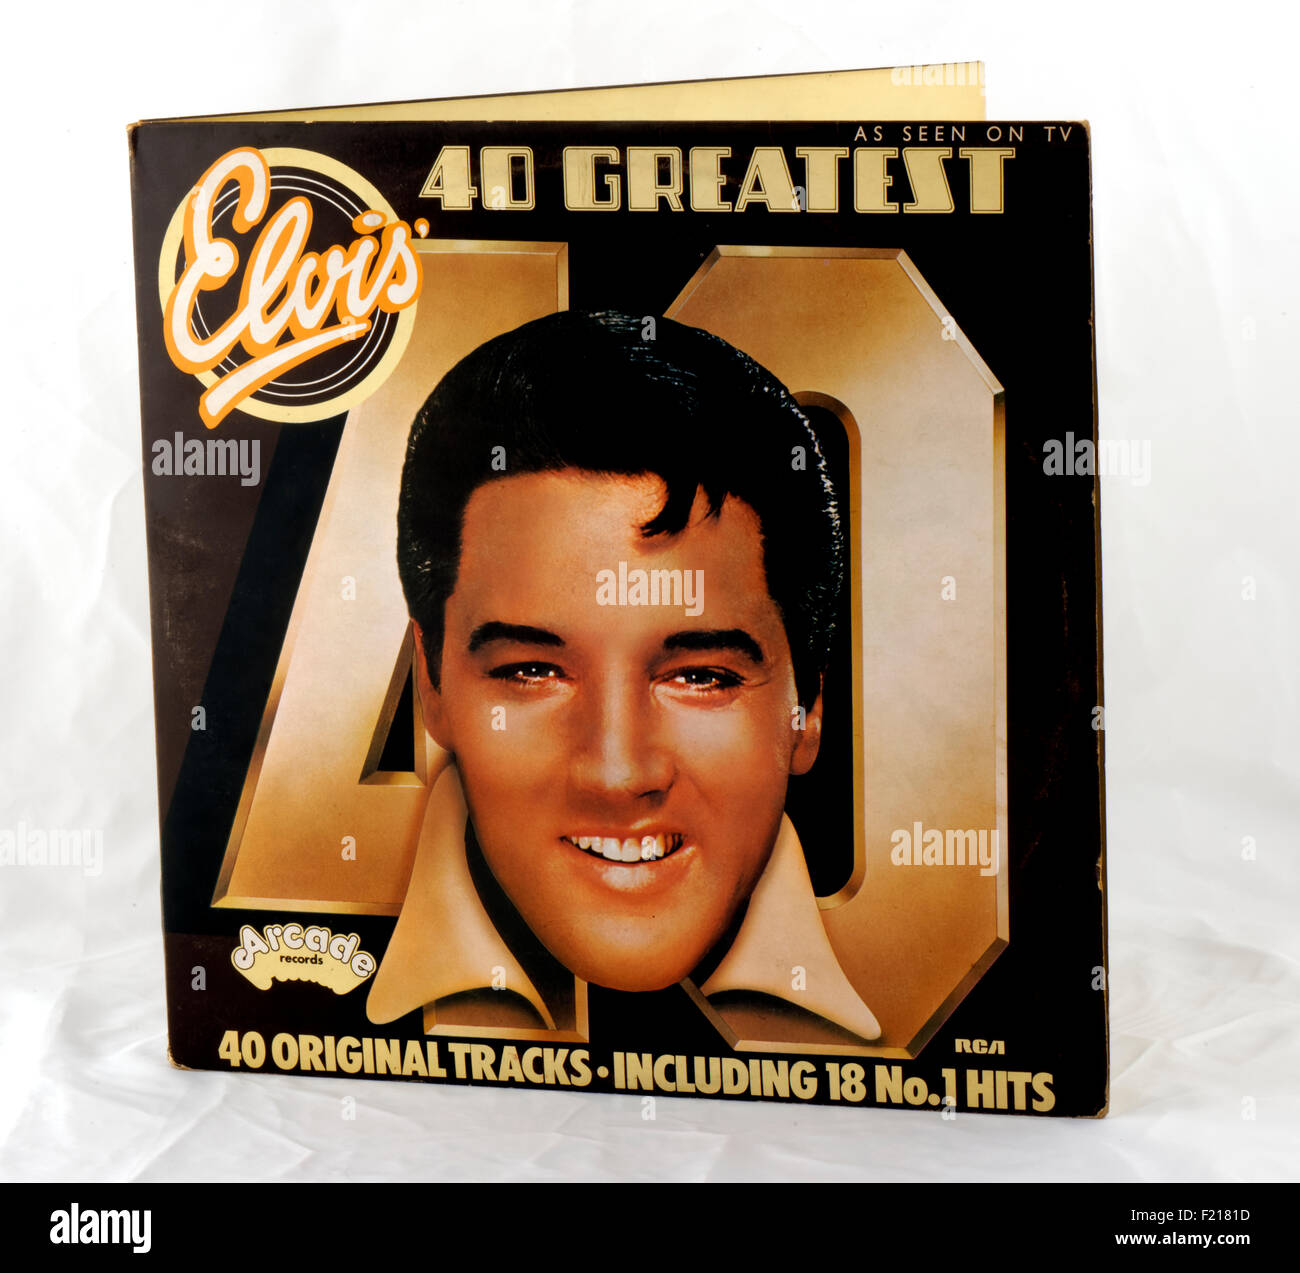 Elvis Presley vinyl record album "40 greatest Hits" double album collection Photo - Alamy